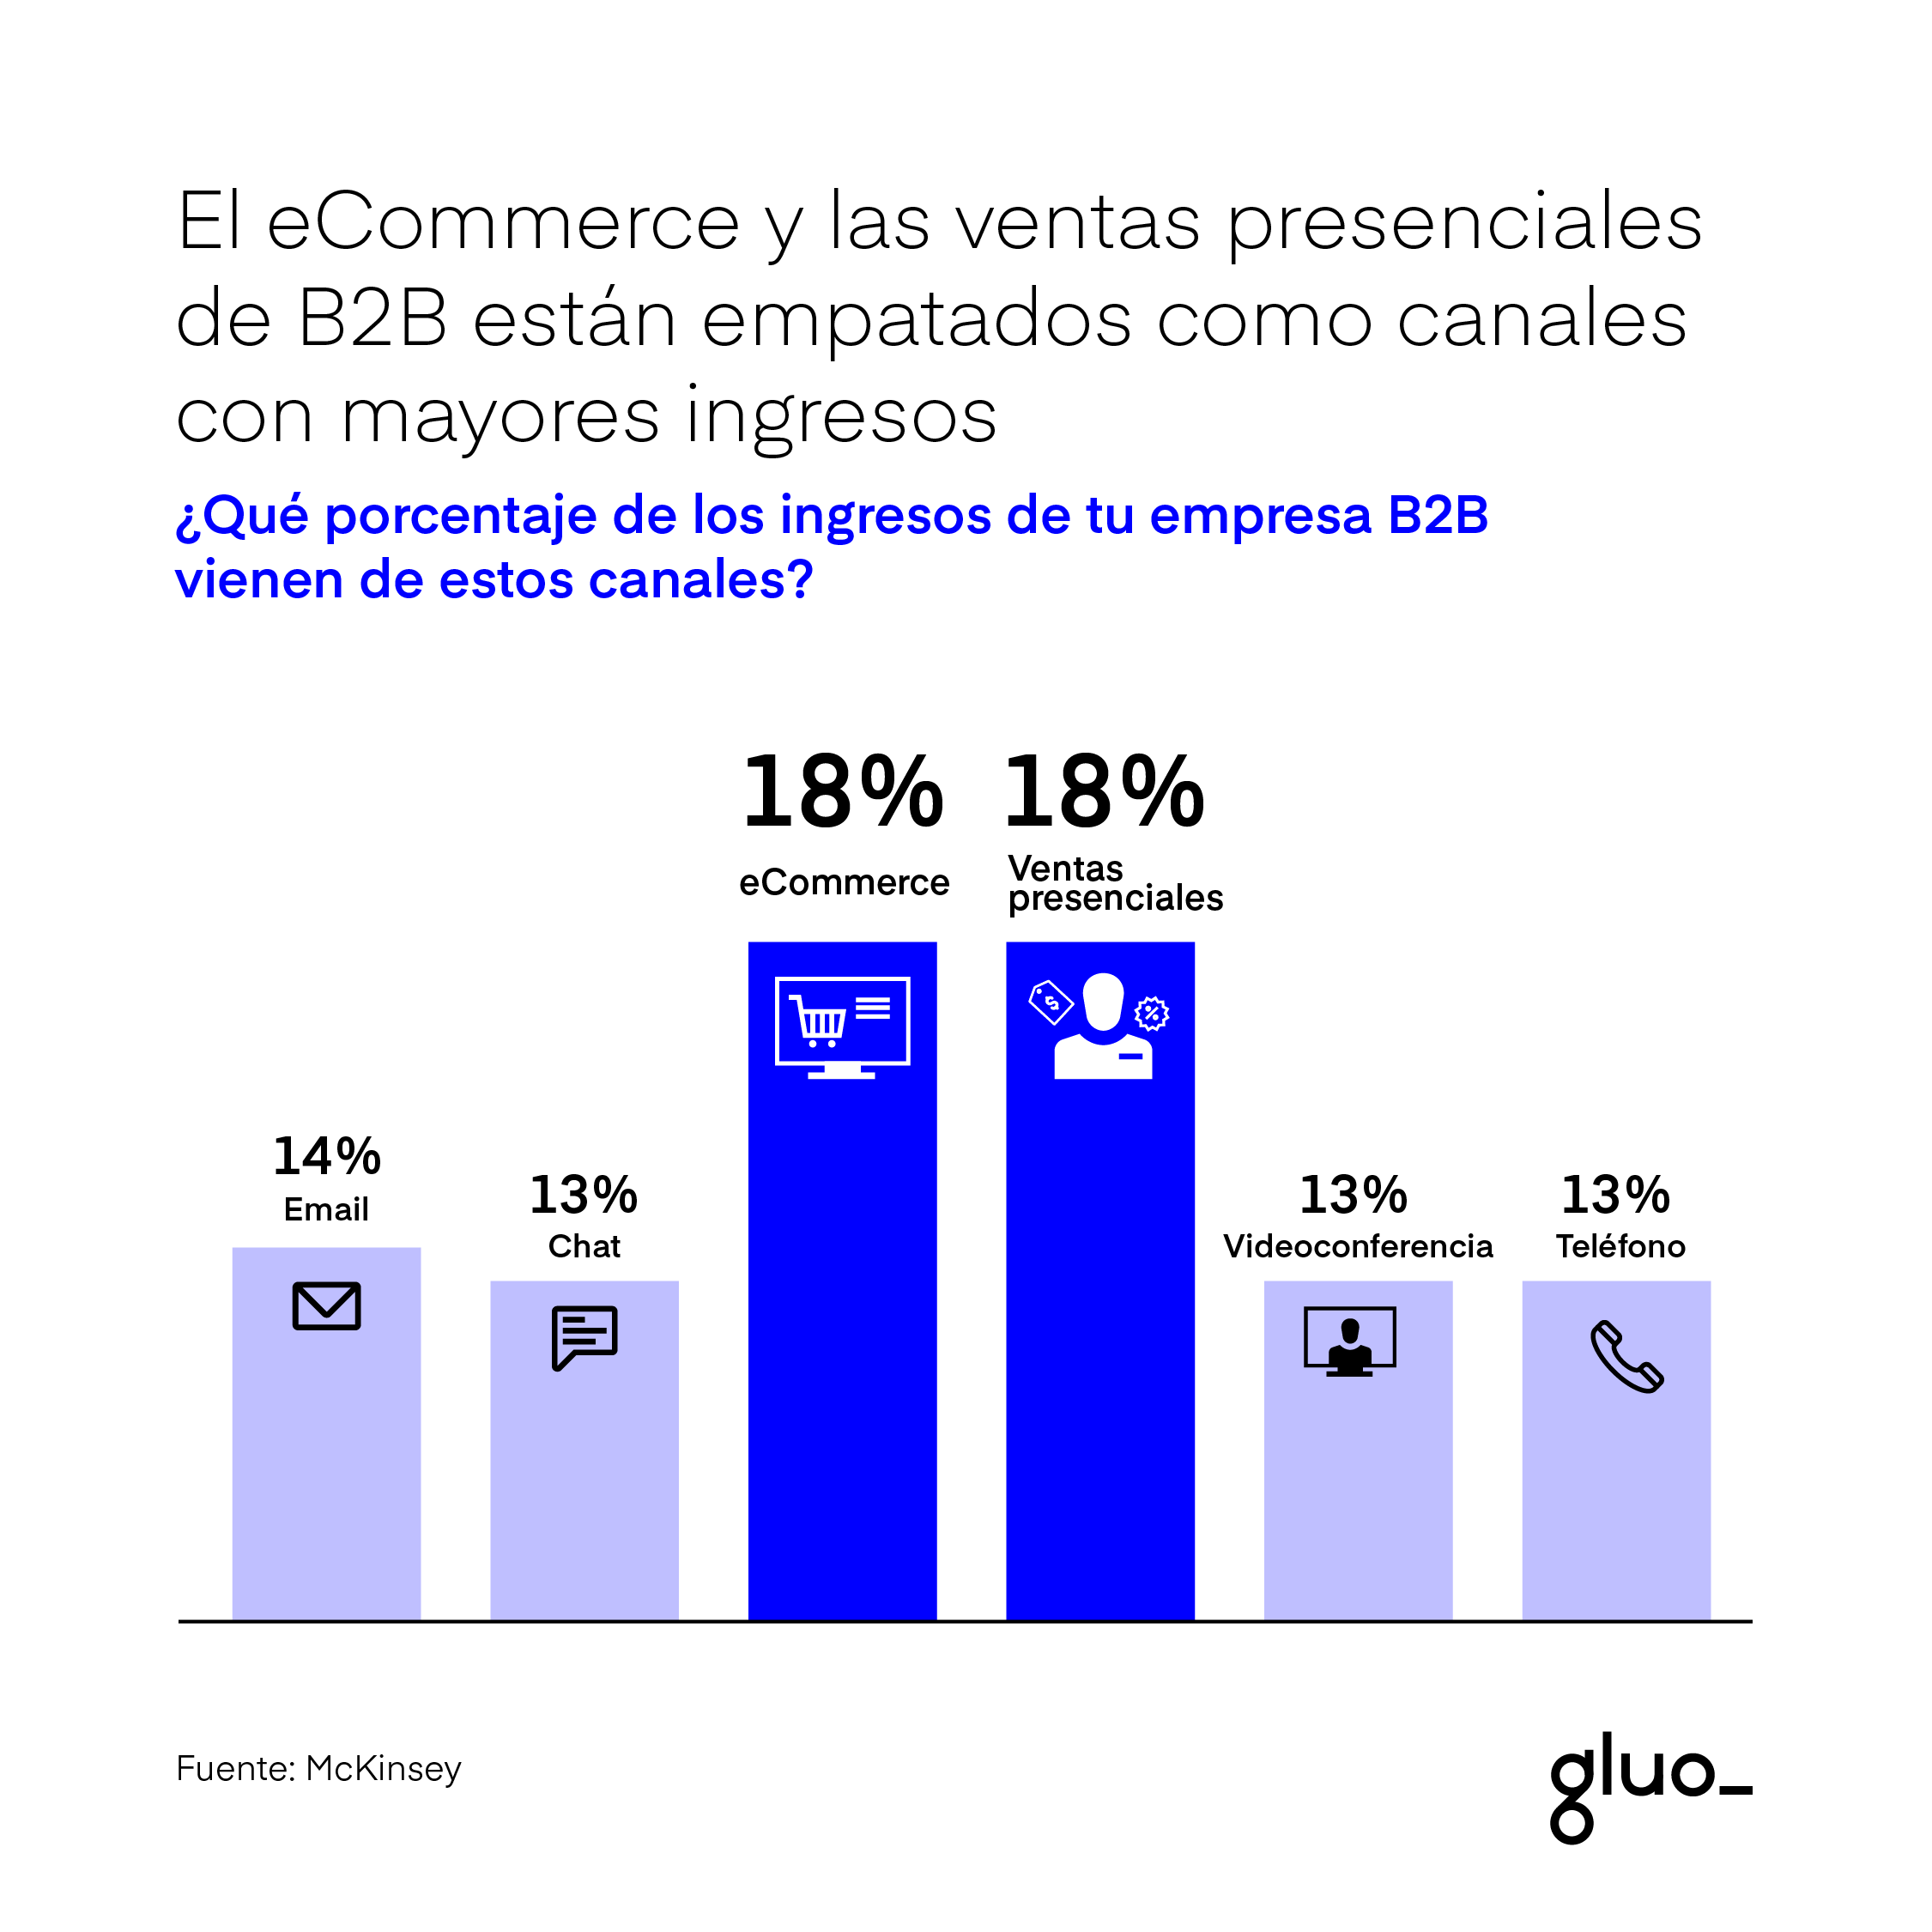 El eCommerce B2B y las ventas presenciales están empatados como canales con mayores ingresos